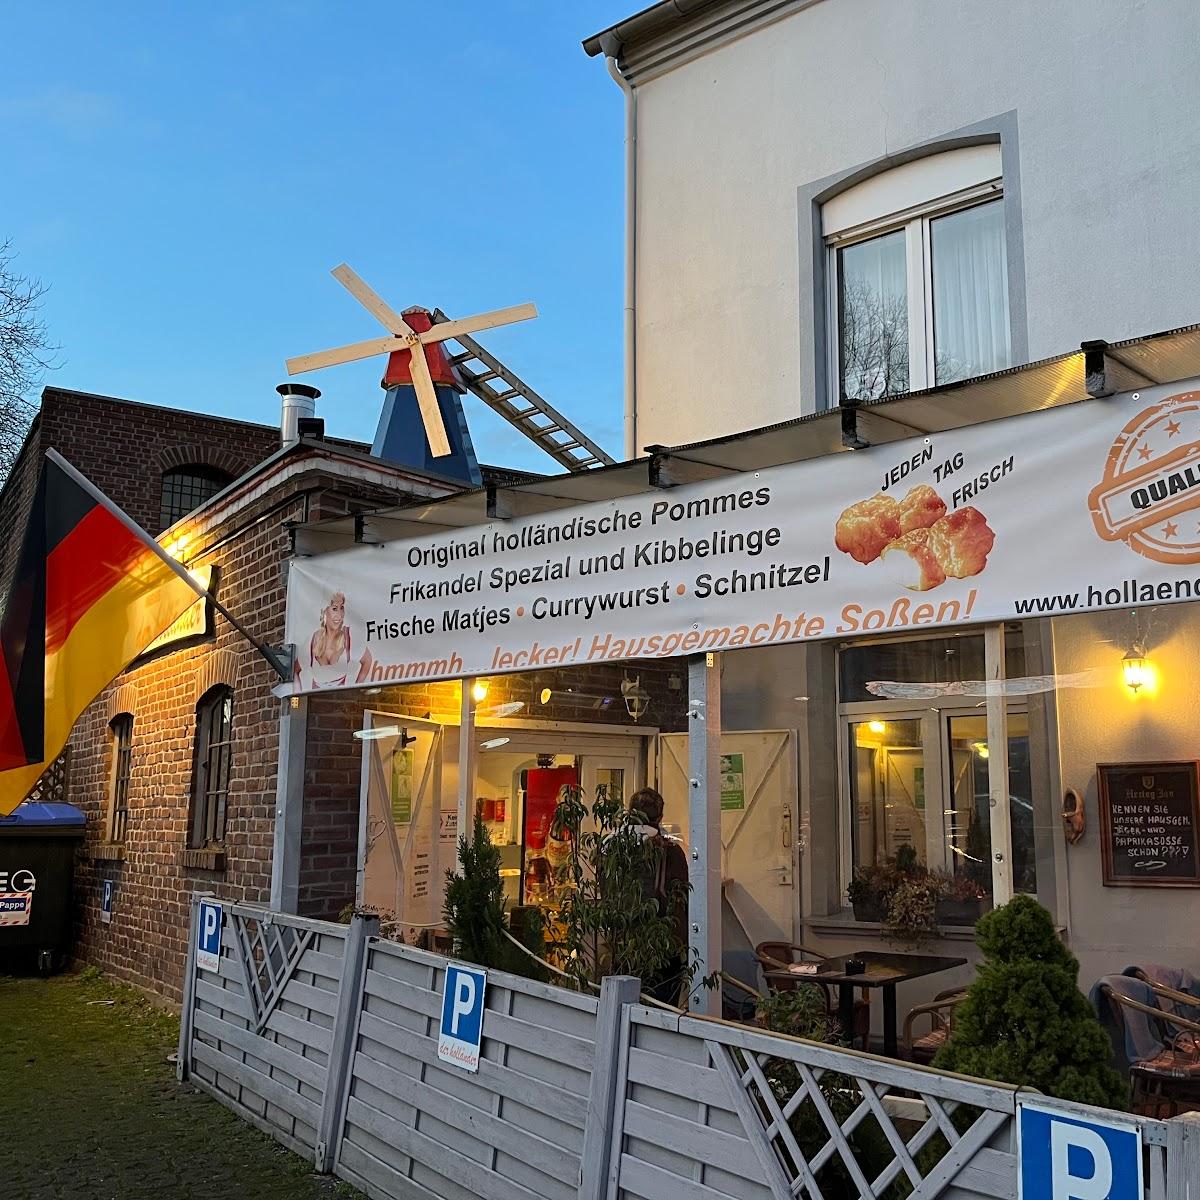 Restaurant "Imbiss der Holländer" in Mülheim an der Ruhr